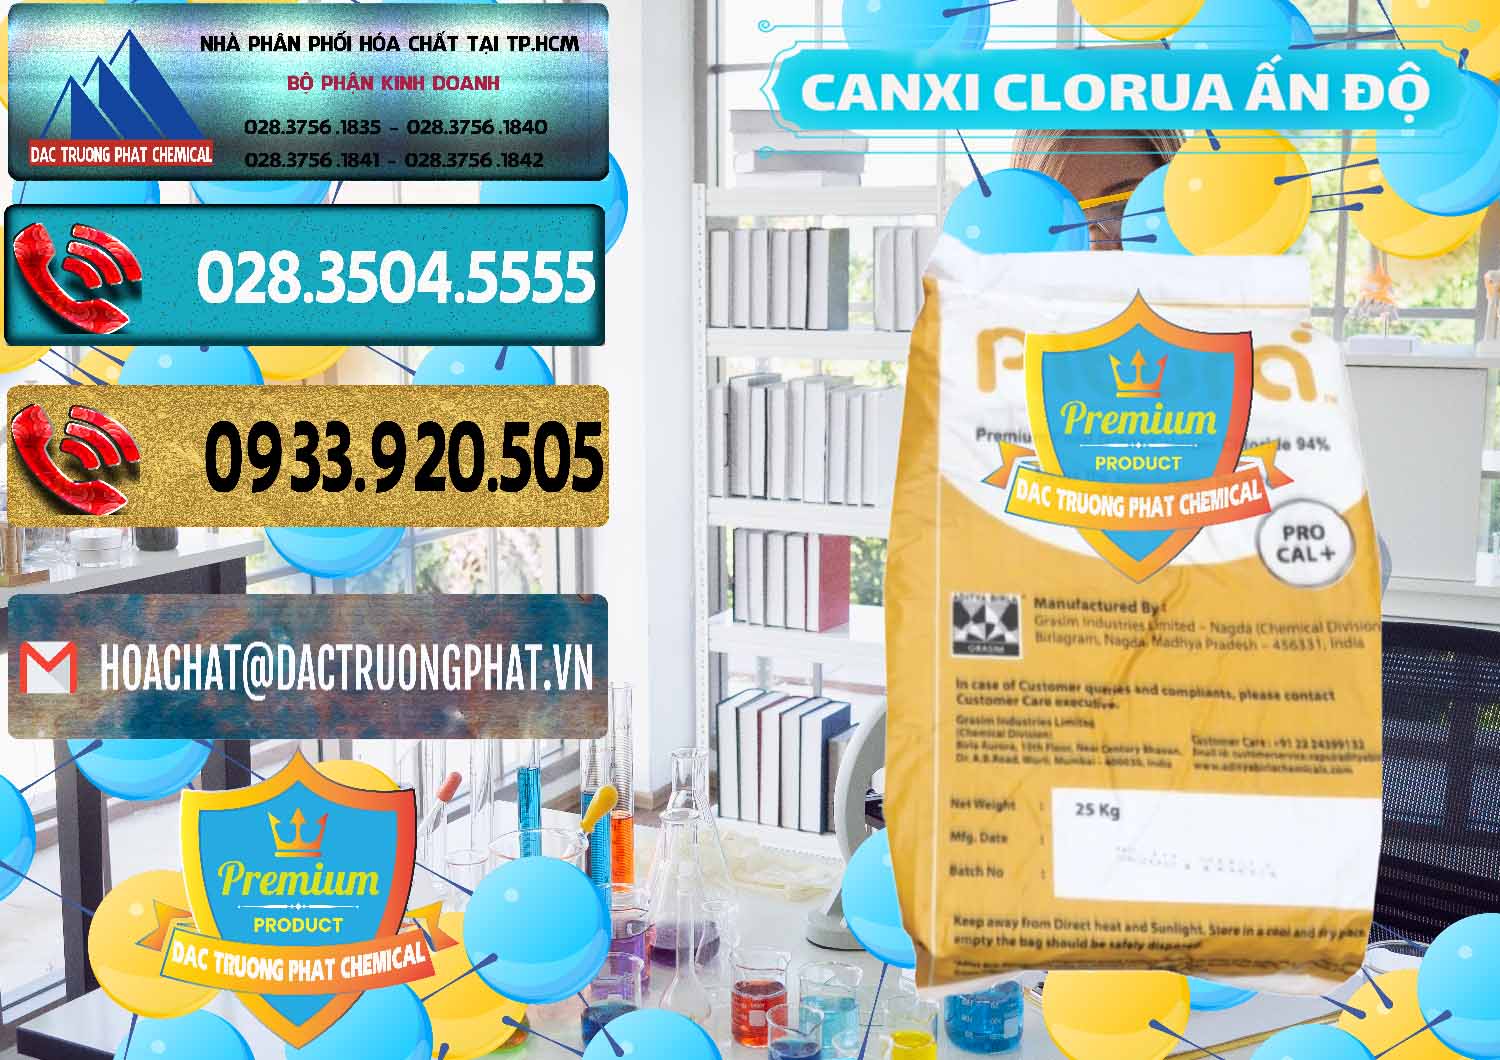 Bán - phân phối CaCl2 – Canxi Clorua Food Grade Altura Aditya Birla Grasim Ấn Độ India - 0436 - Cung cấp và phân phối hóa chất tại TP.HCM - hoachatdetnhuom.com